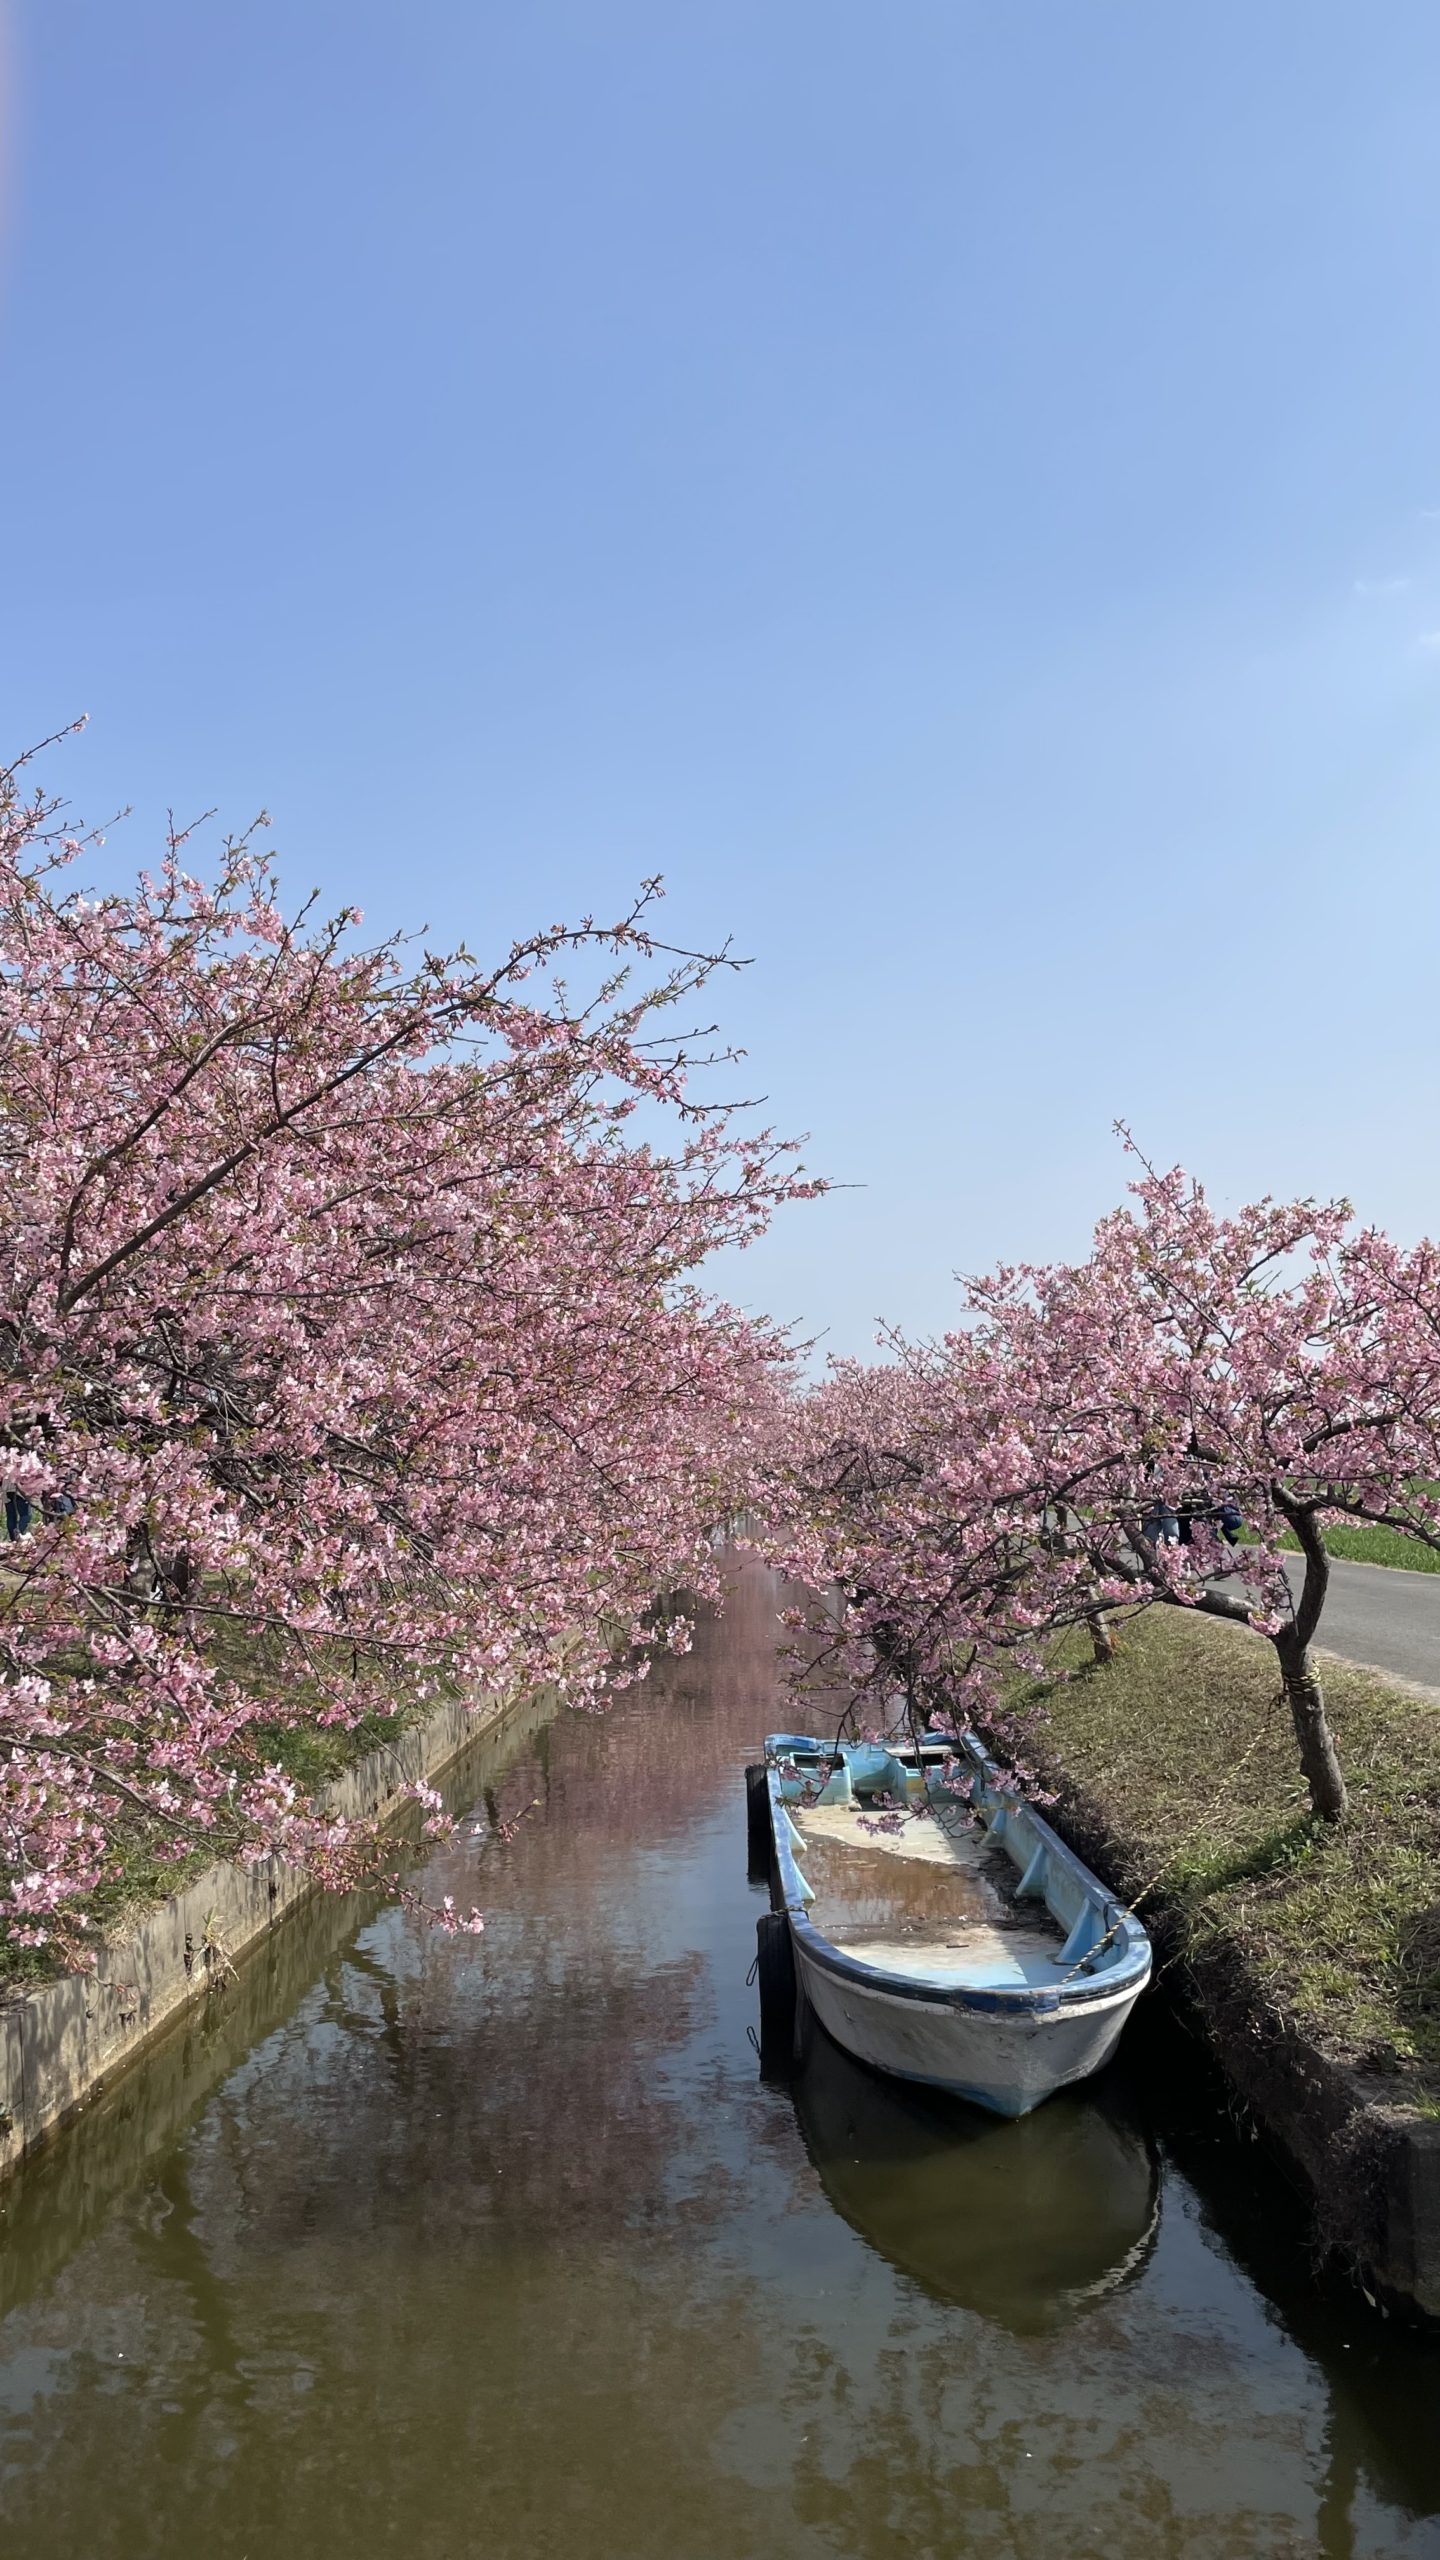 笠松町河津桜の開花状況【令和5年3月10日現在】